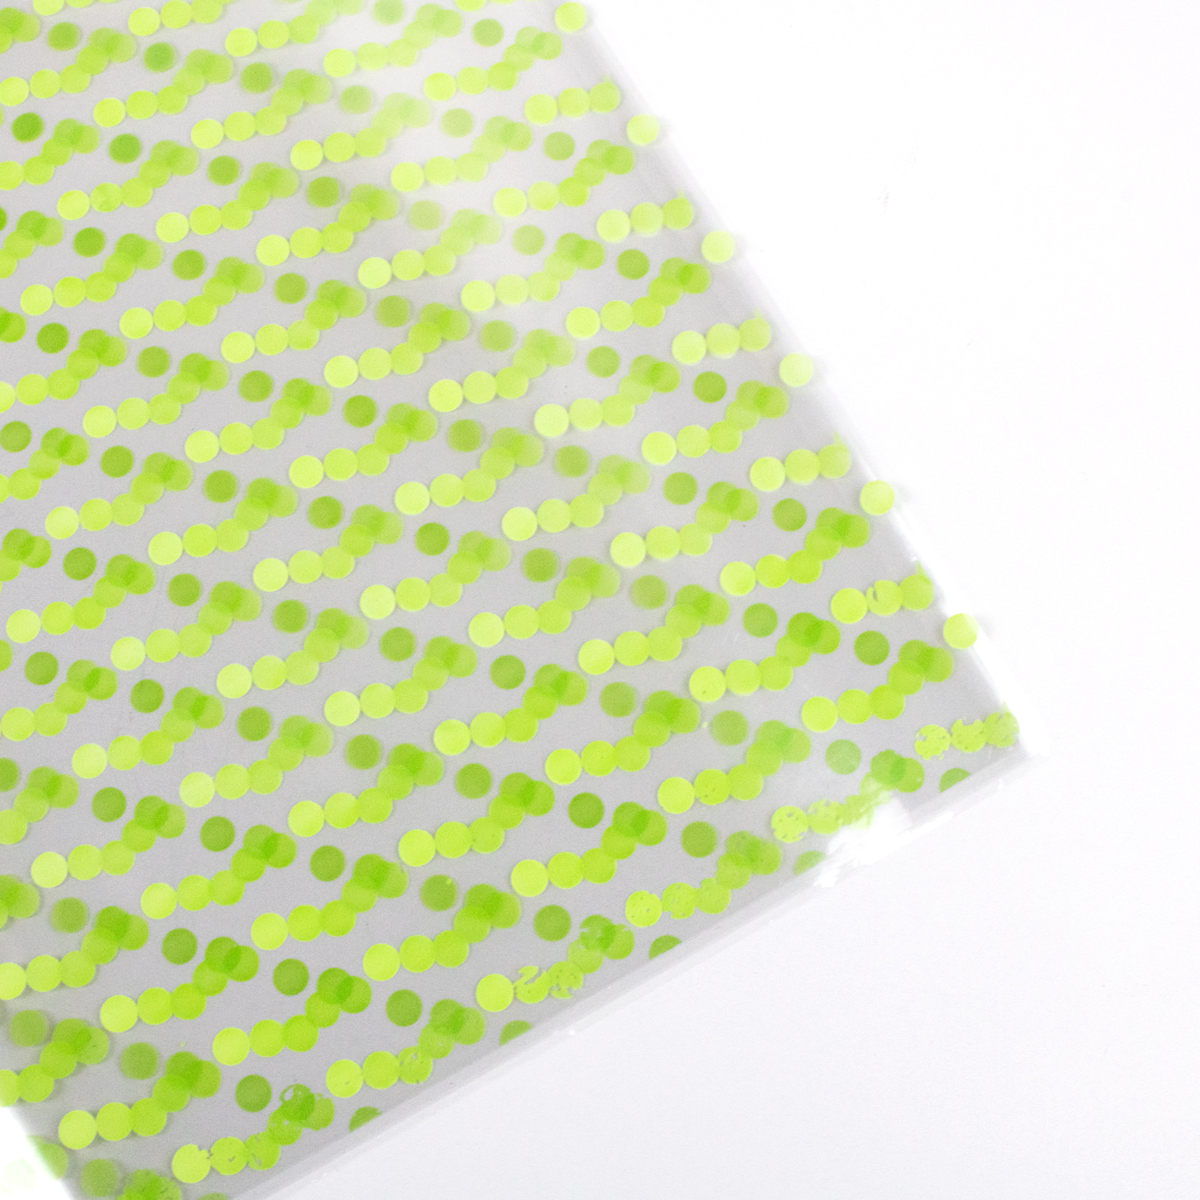 Papel celofan con diseño de patrón de puntos verdes